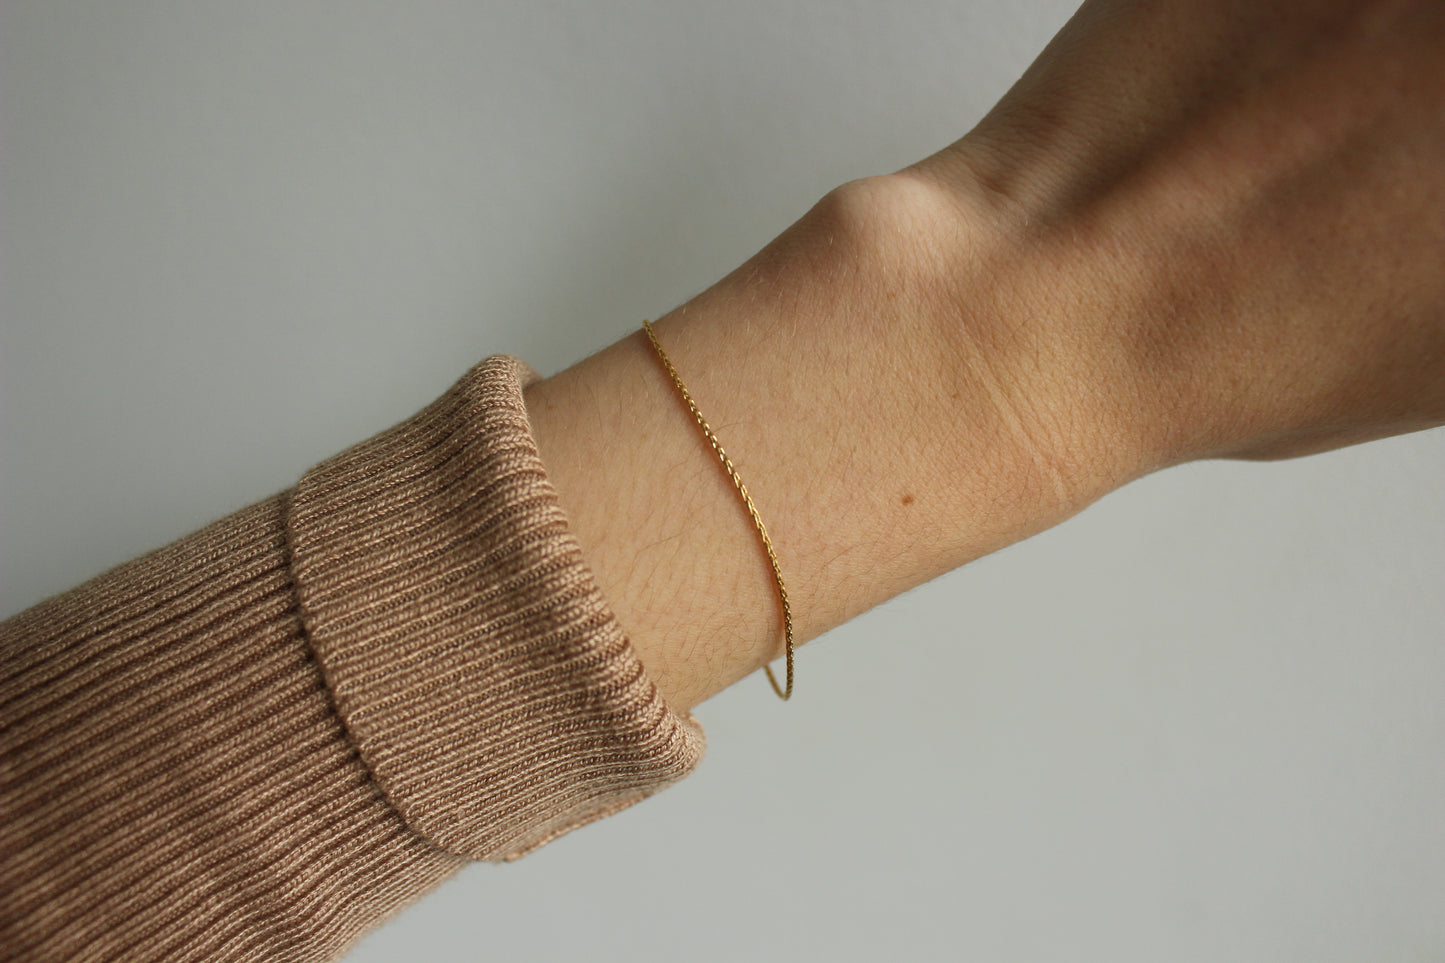 14k gold fill bracelet · Mix styles · Stack bracelet for women · Best seller on Etsy